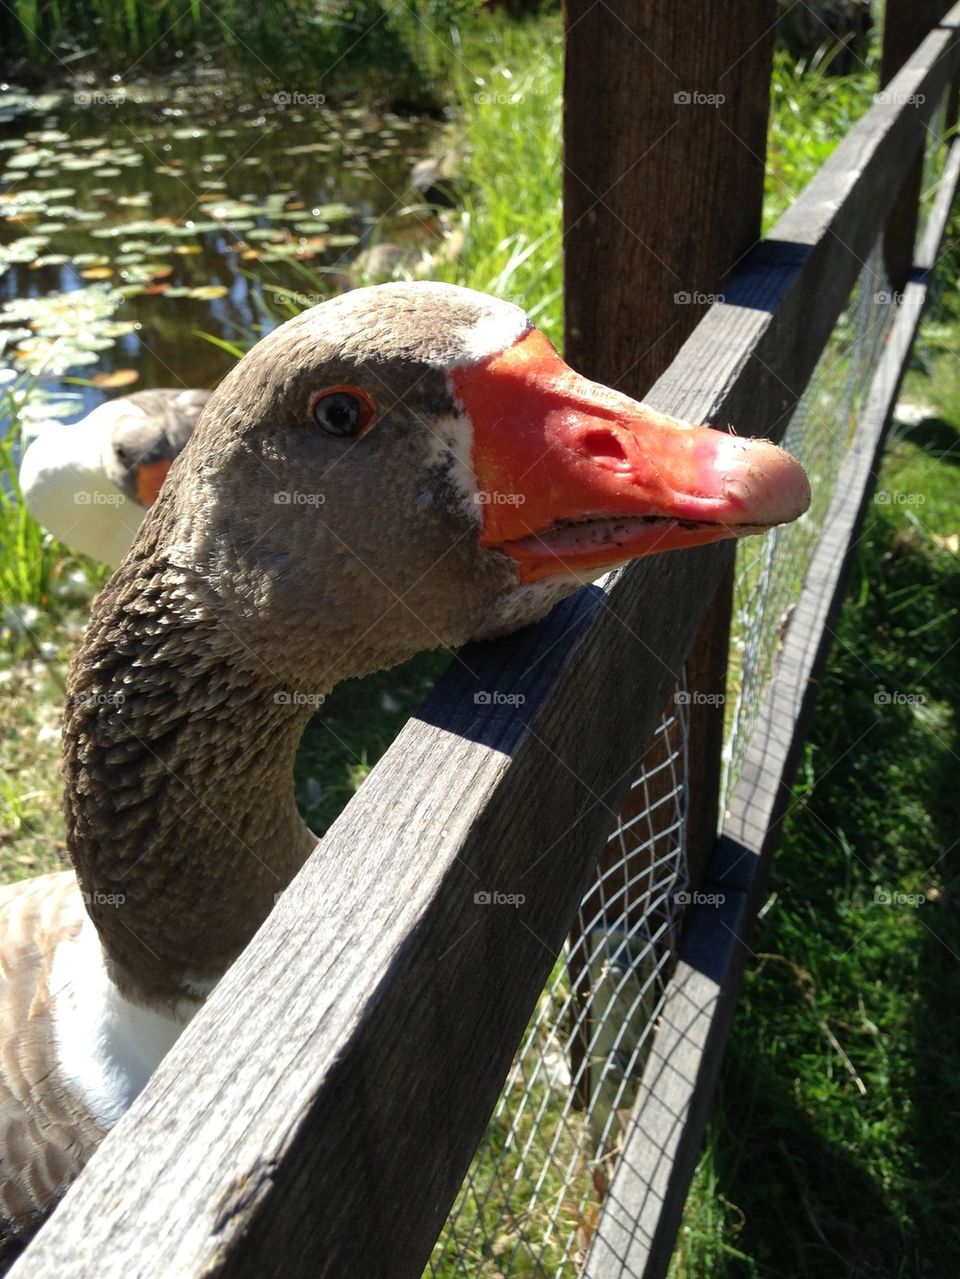 A curious Goose